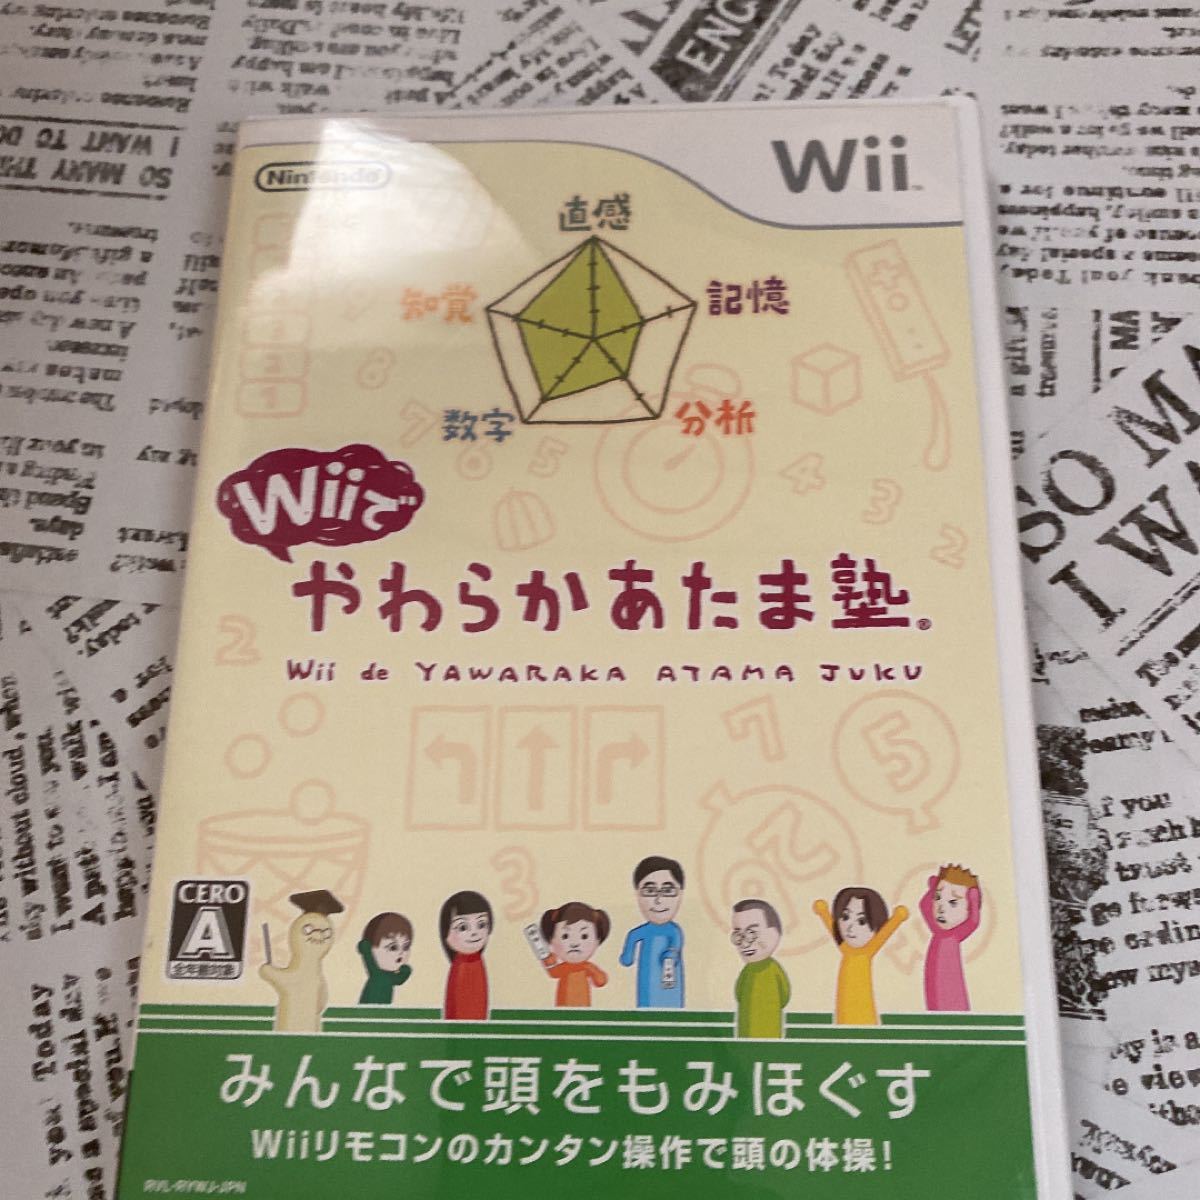 Wiiでやわらかあたま塾 Wiiソフト